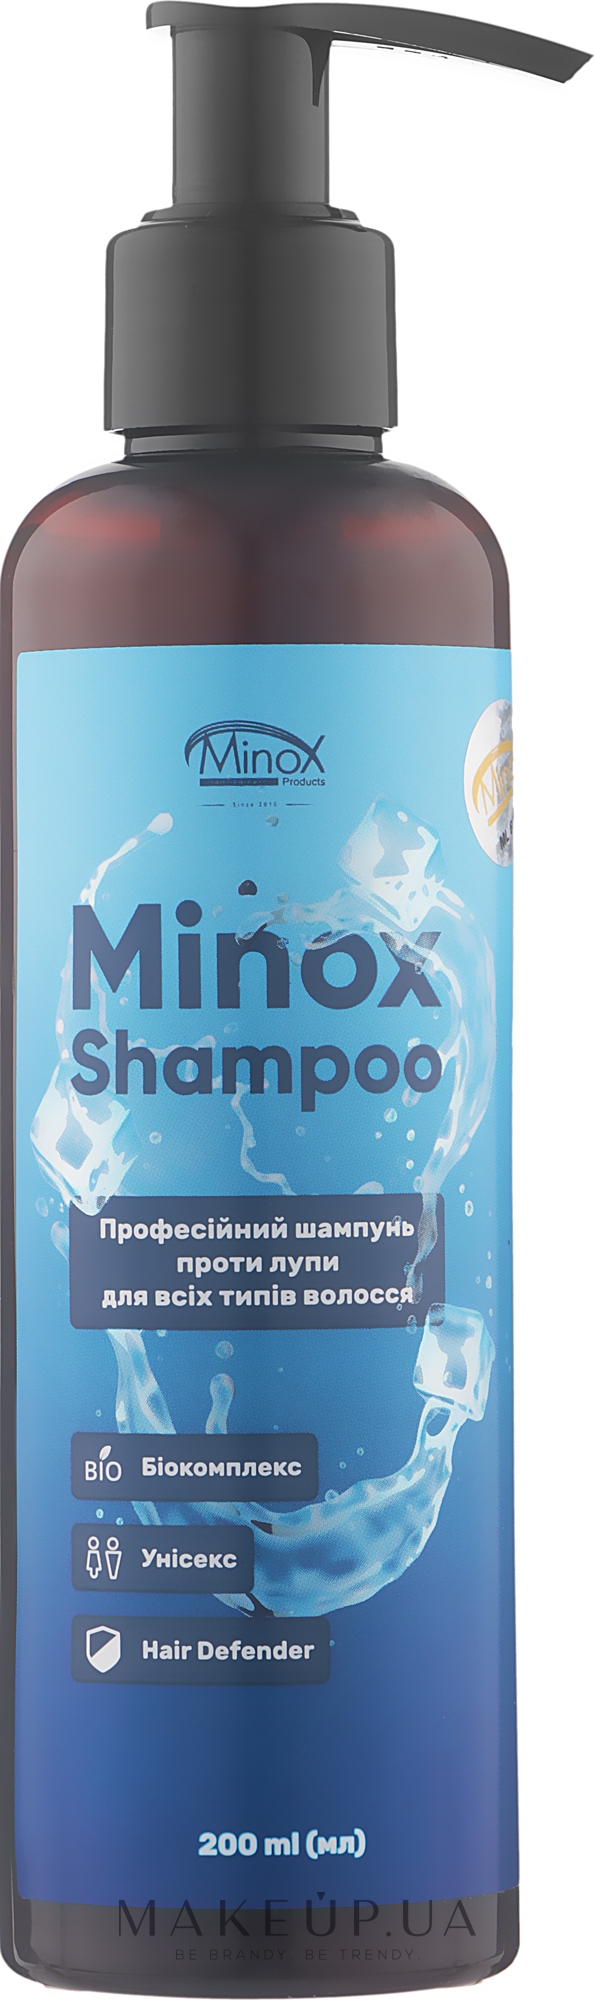 Шампунь проти лупи для всіх типів волосся - MinoX Shampoo — фото 200ml